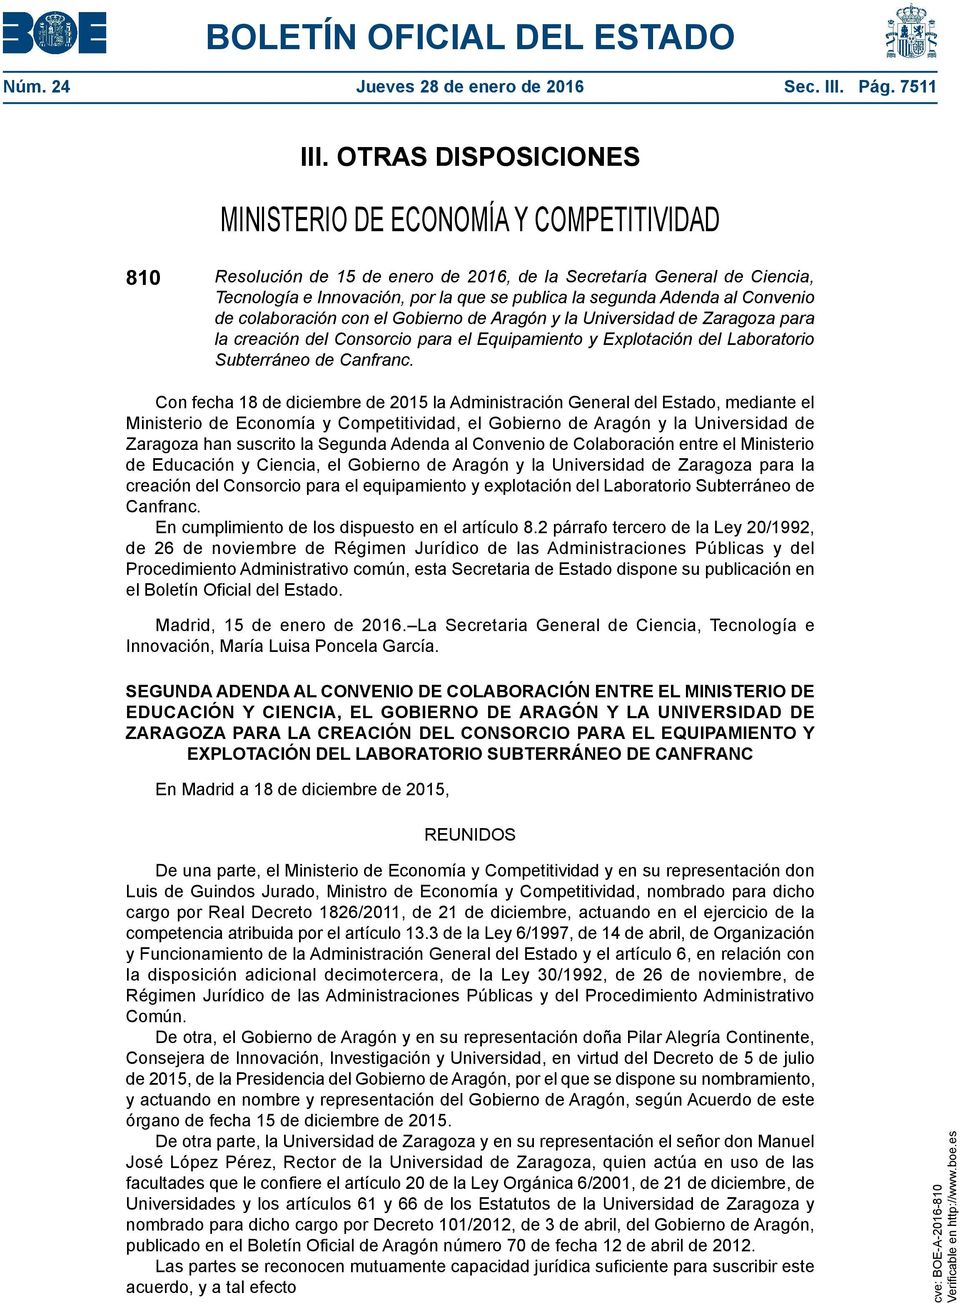 Adenda al Convenio de colaboración con el Gobierno de Aragón y la Universidad de Zaragoza para la creación del Consorcio para el Equipamiento y Explotación del Laboratorio Subterráneo de Canfranc.